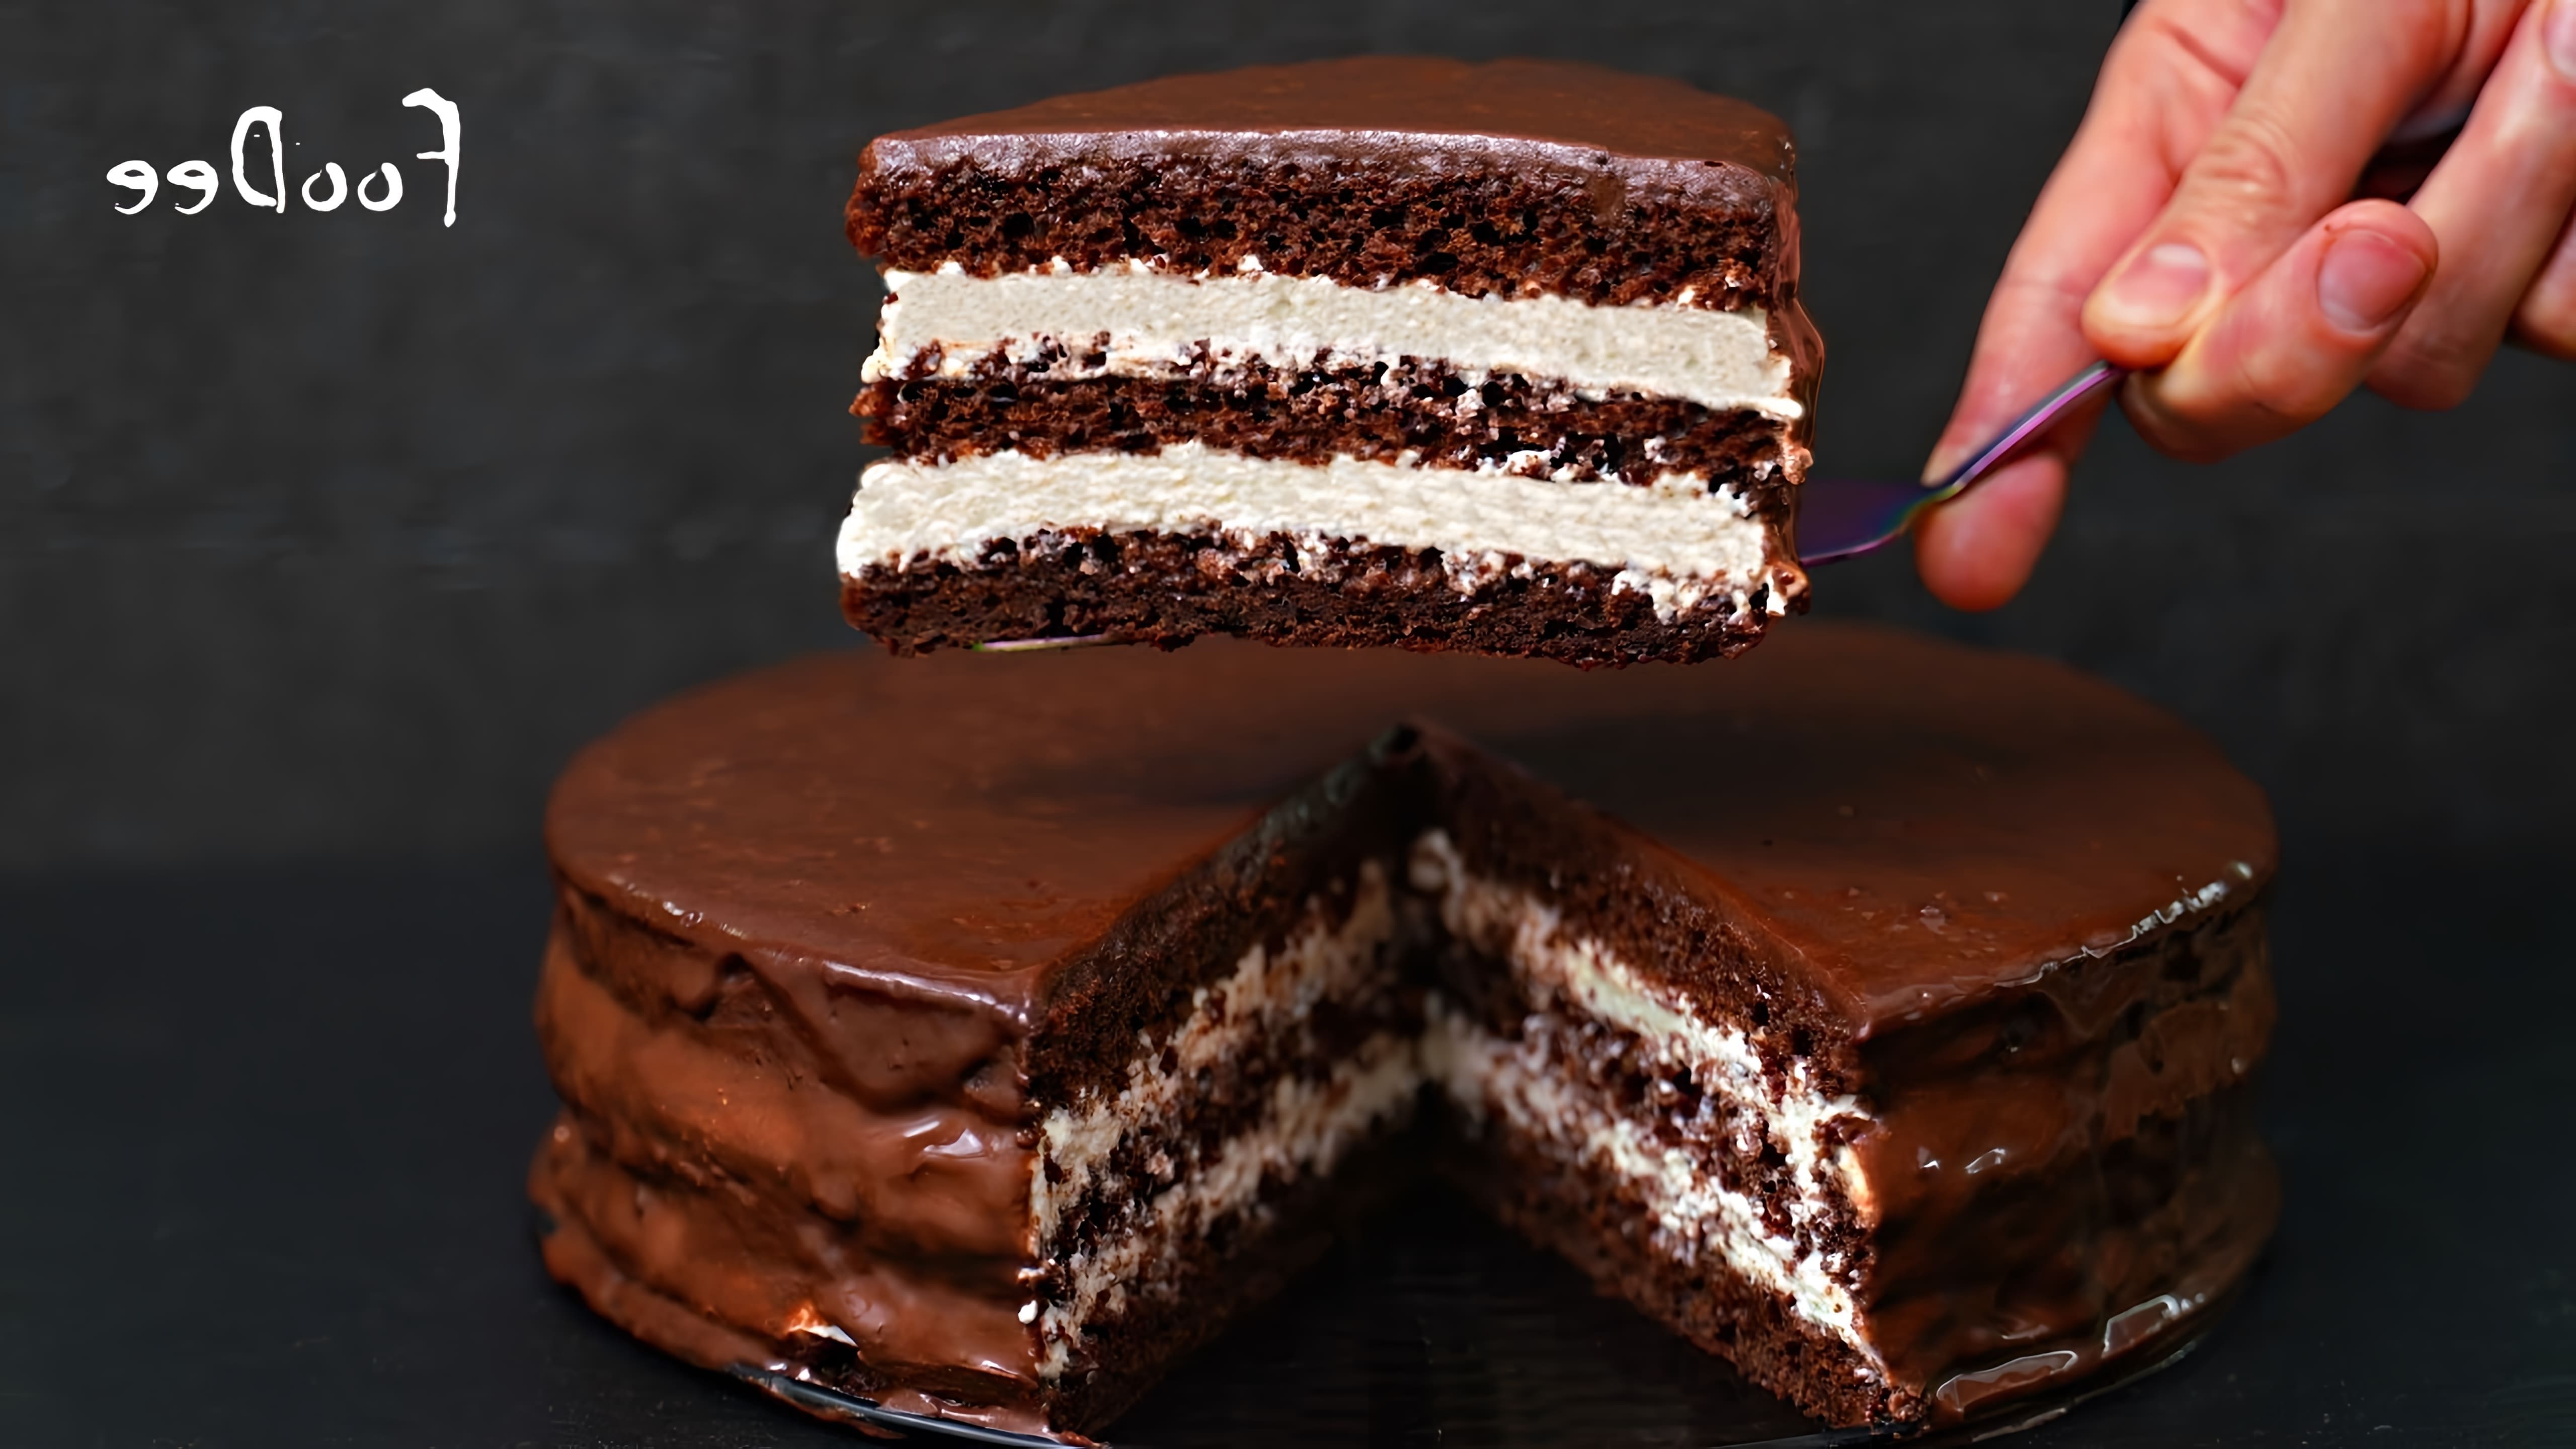 В этом видео демонстрируется рецепт шоколадного торта без использования весов